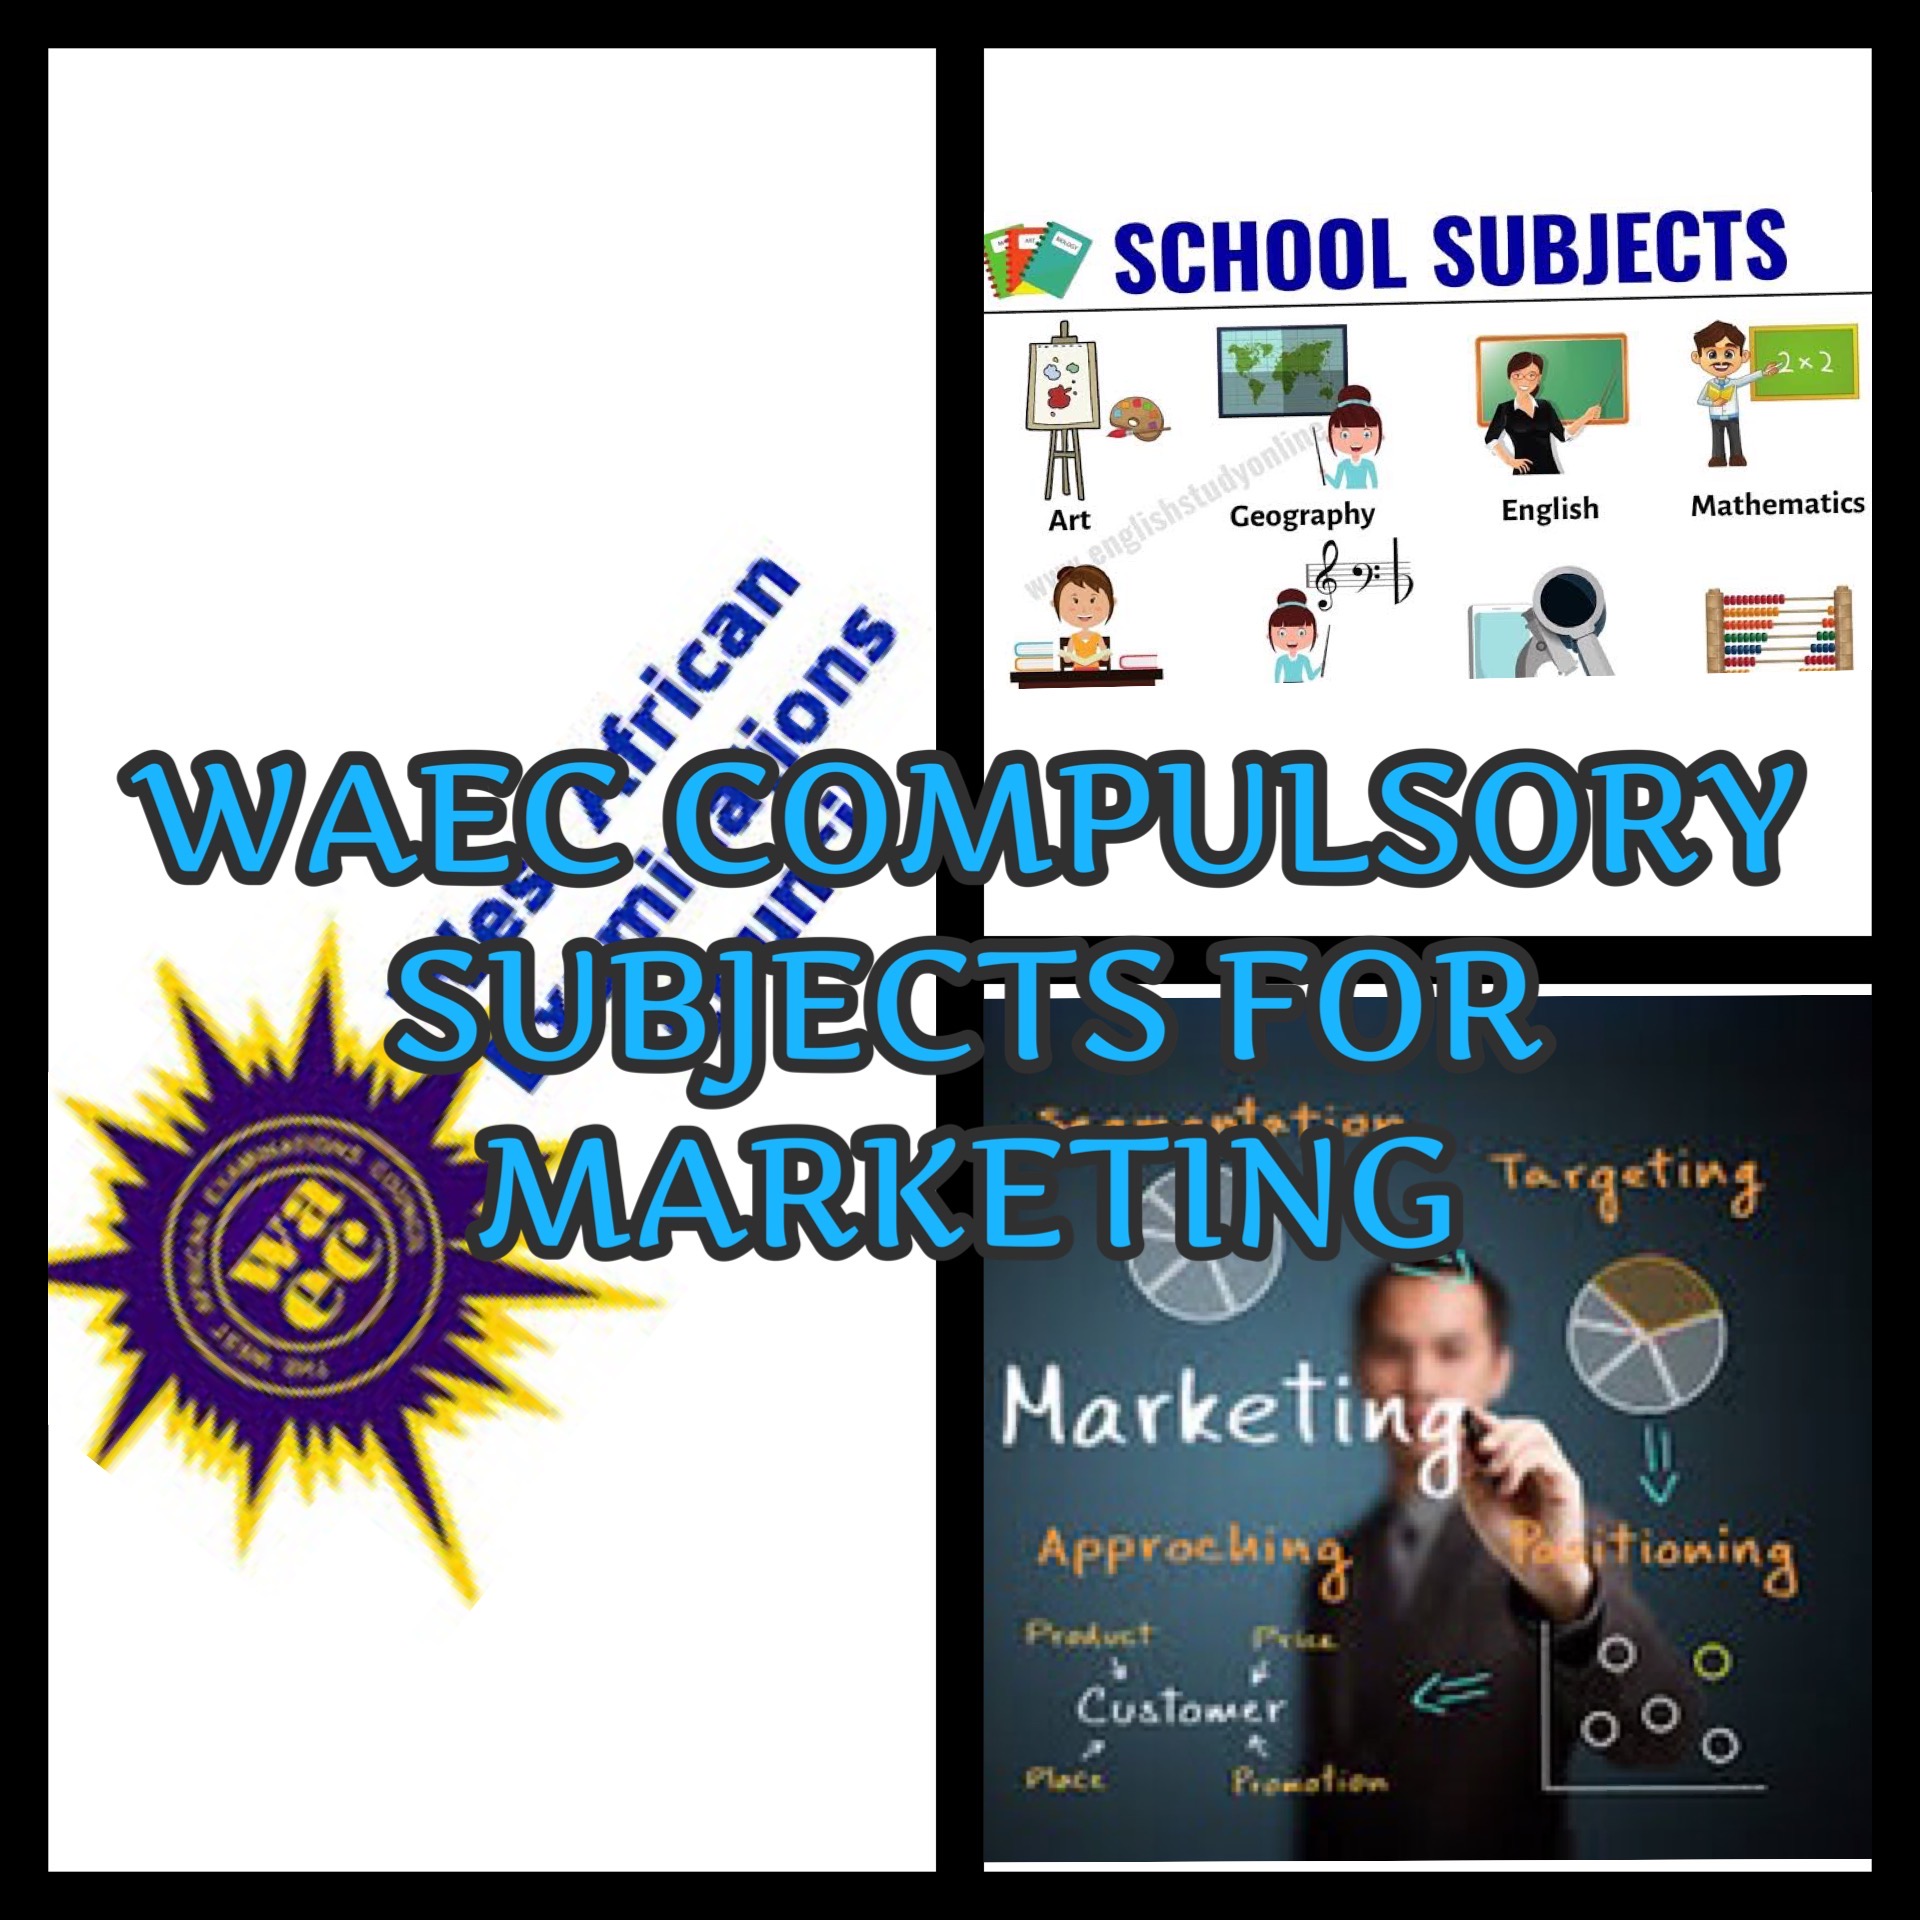 WAEC Compulsory Subjects For Marketing